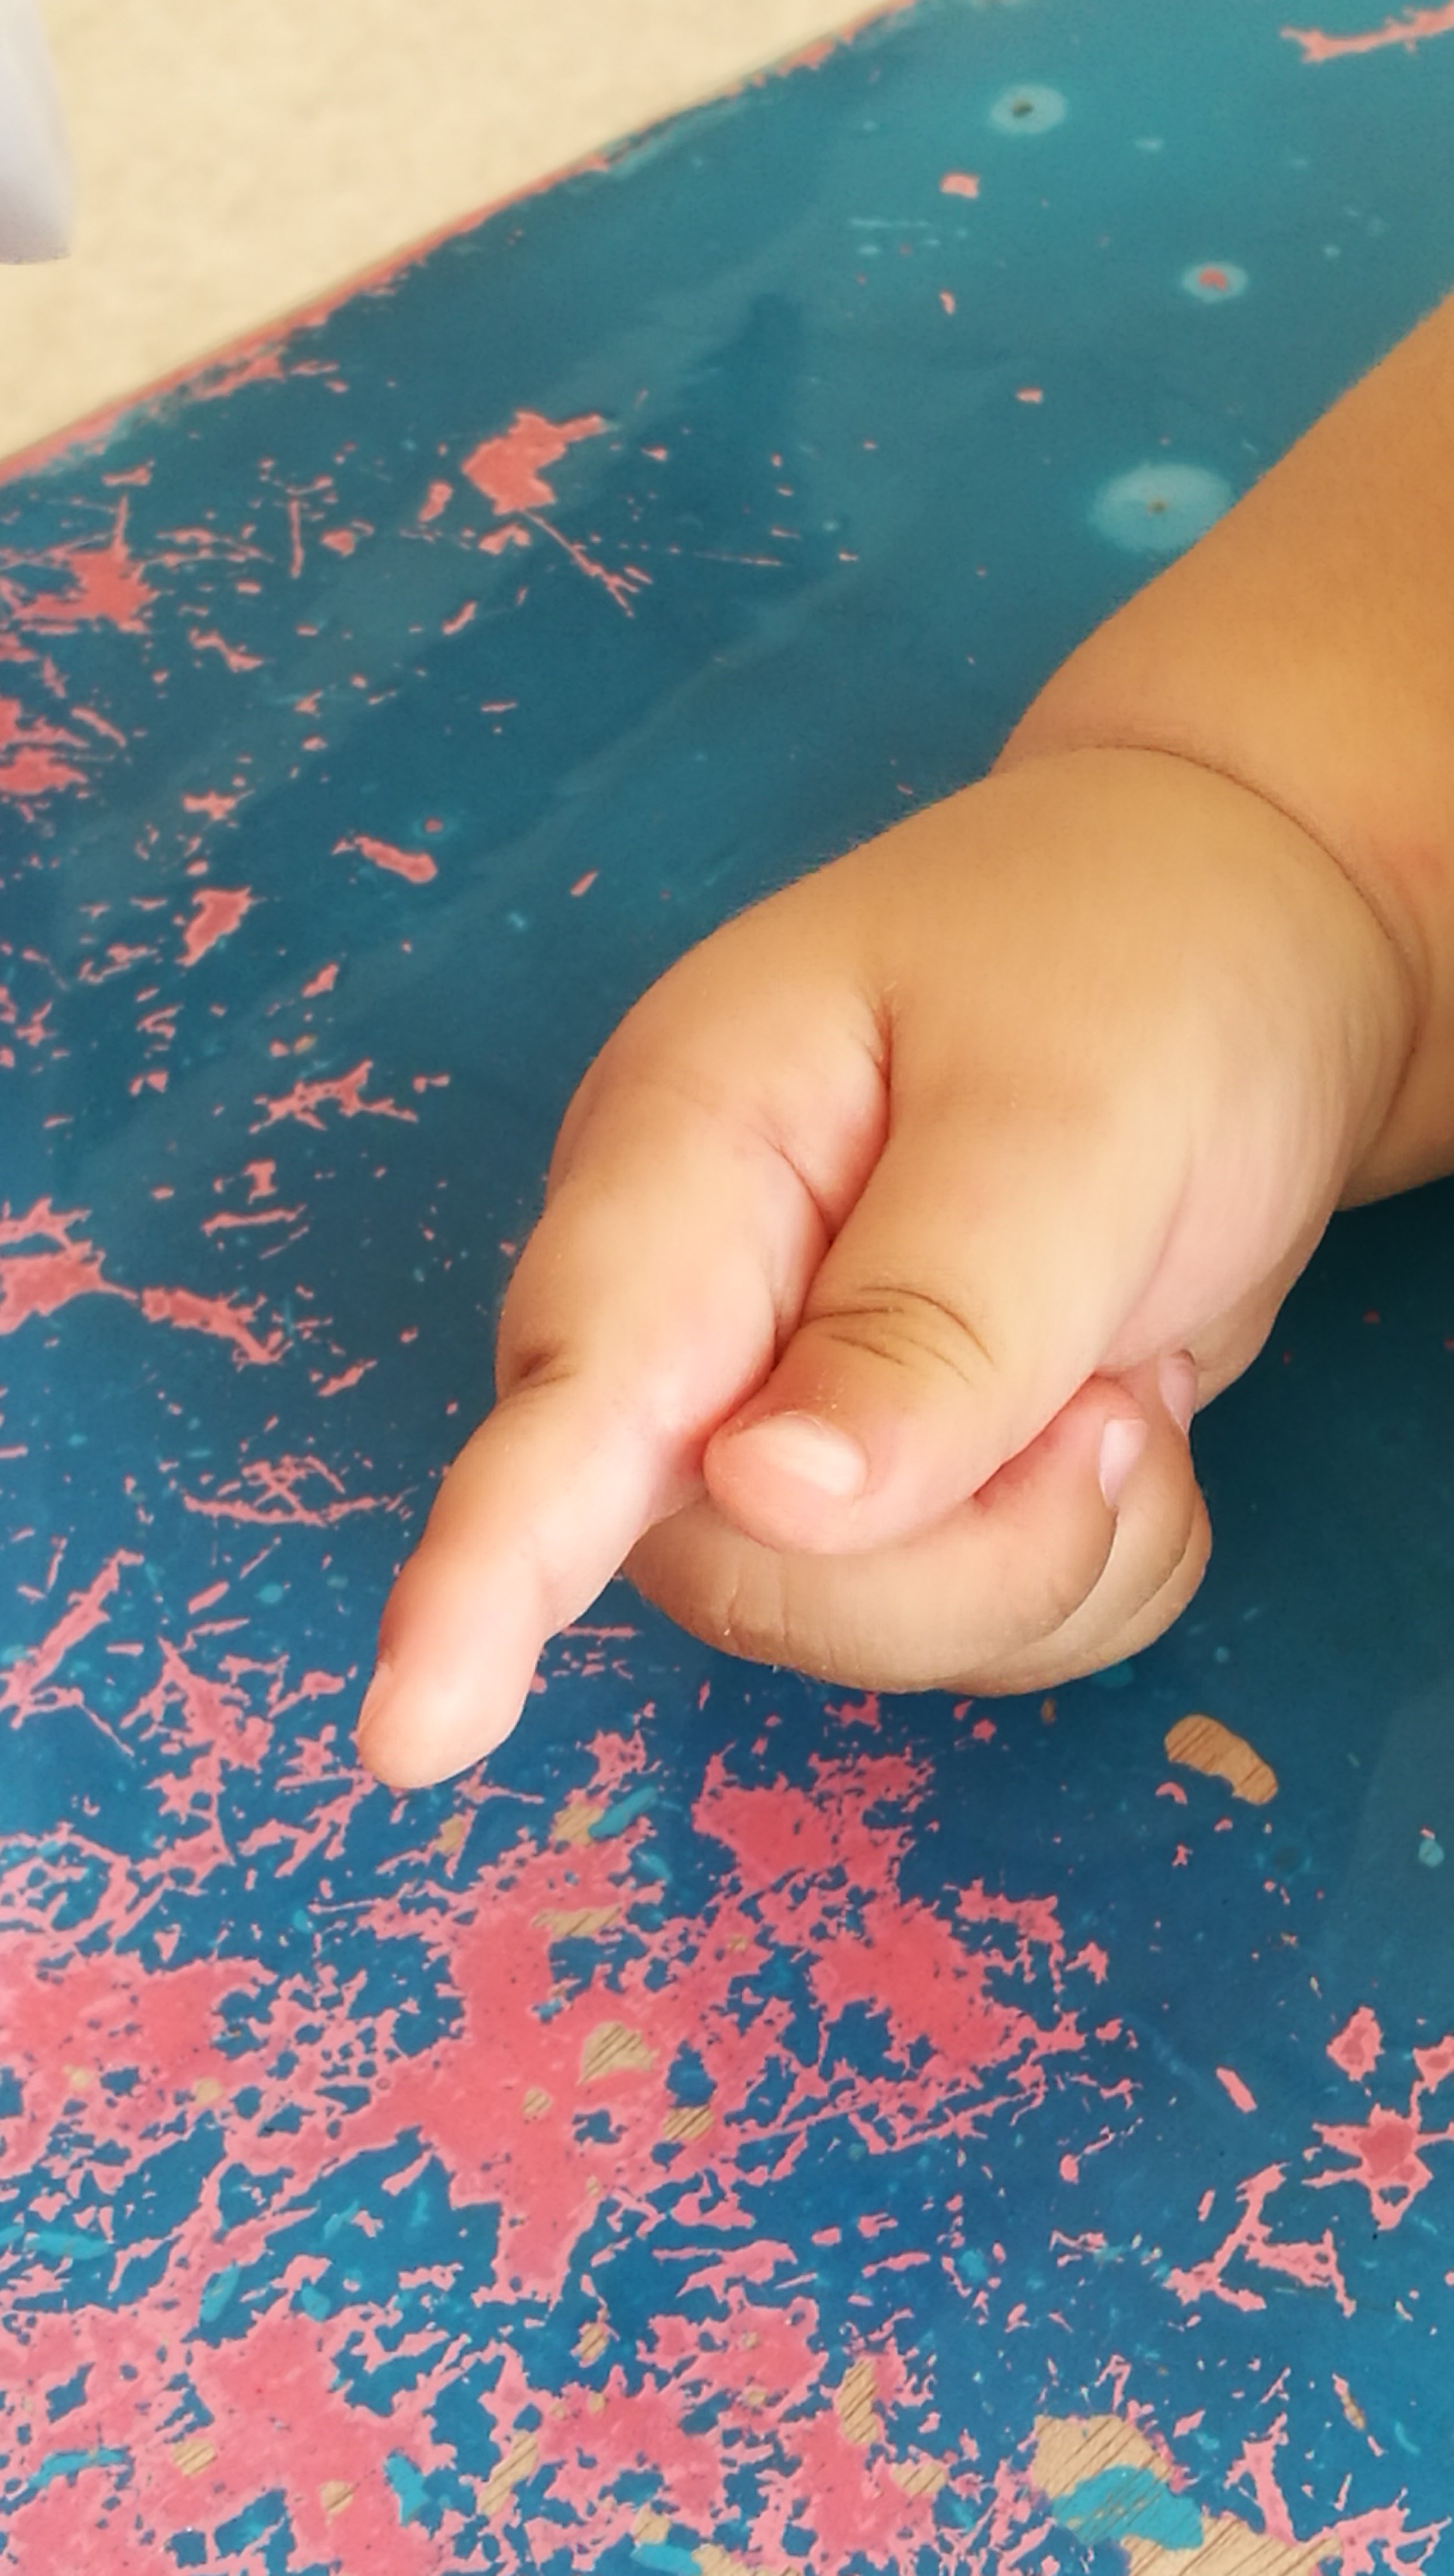 张强 文章列表 痉挛型脑瘫儿童中,手的拇指内收一直是训练的重点和